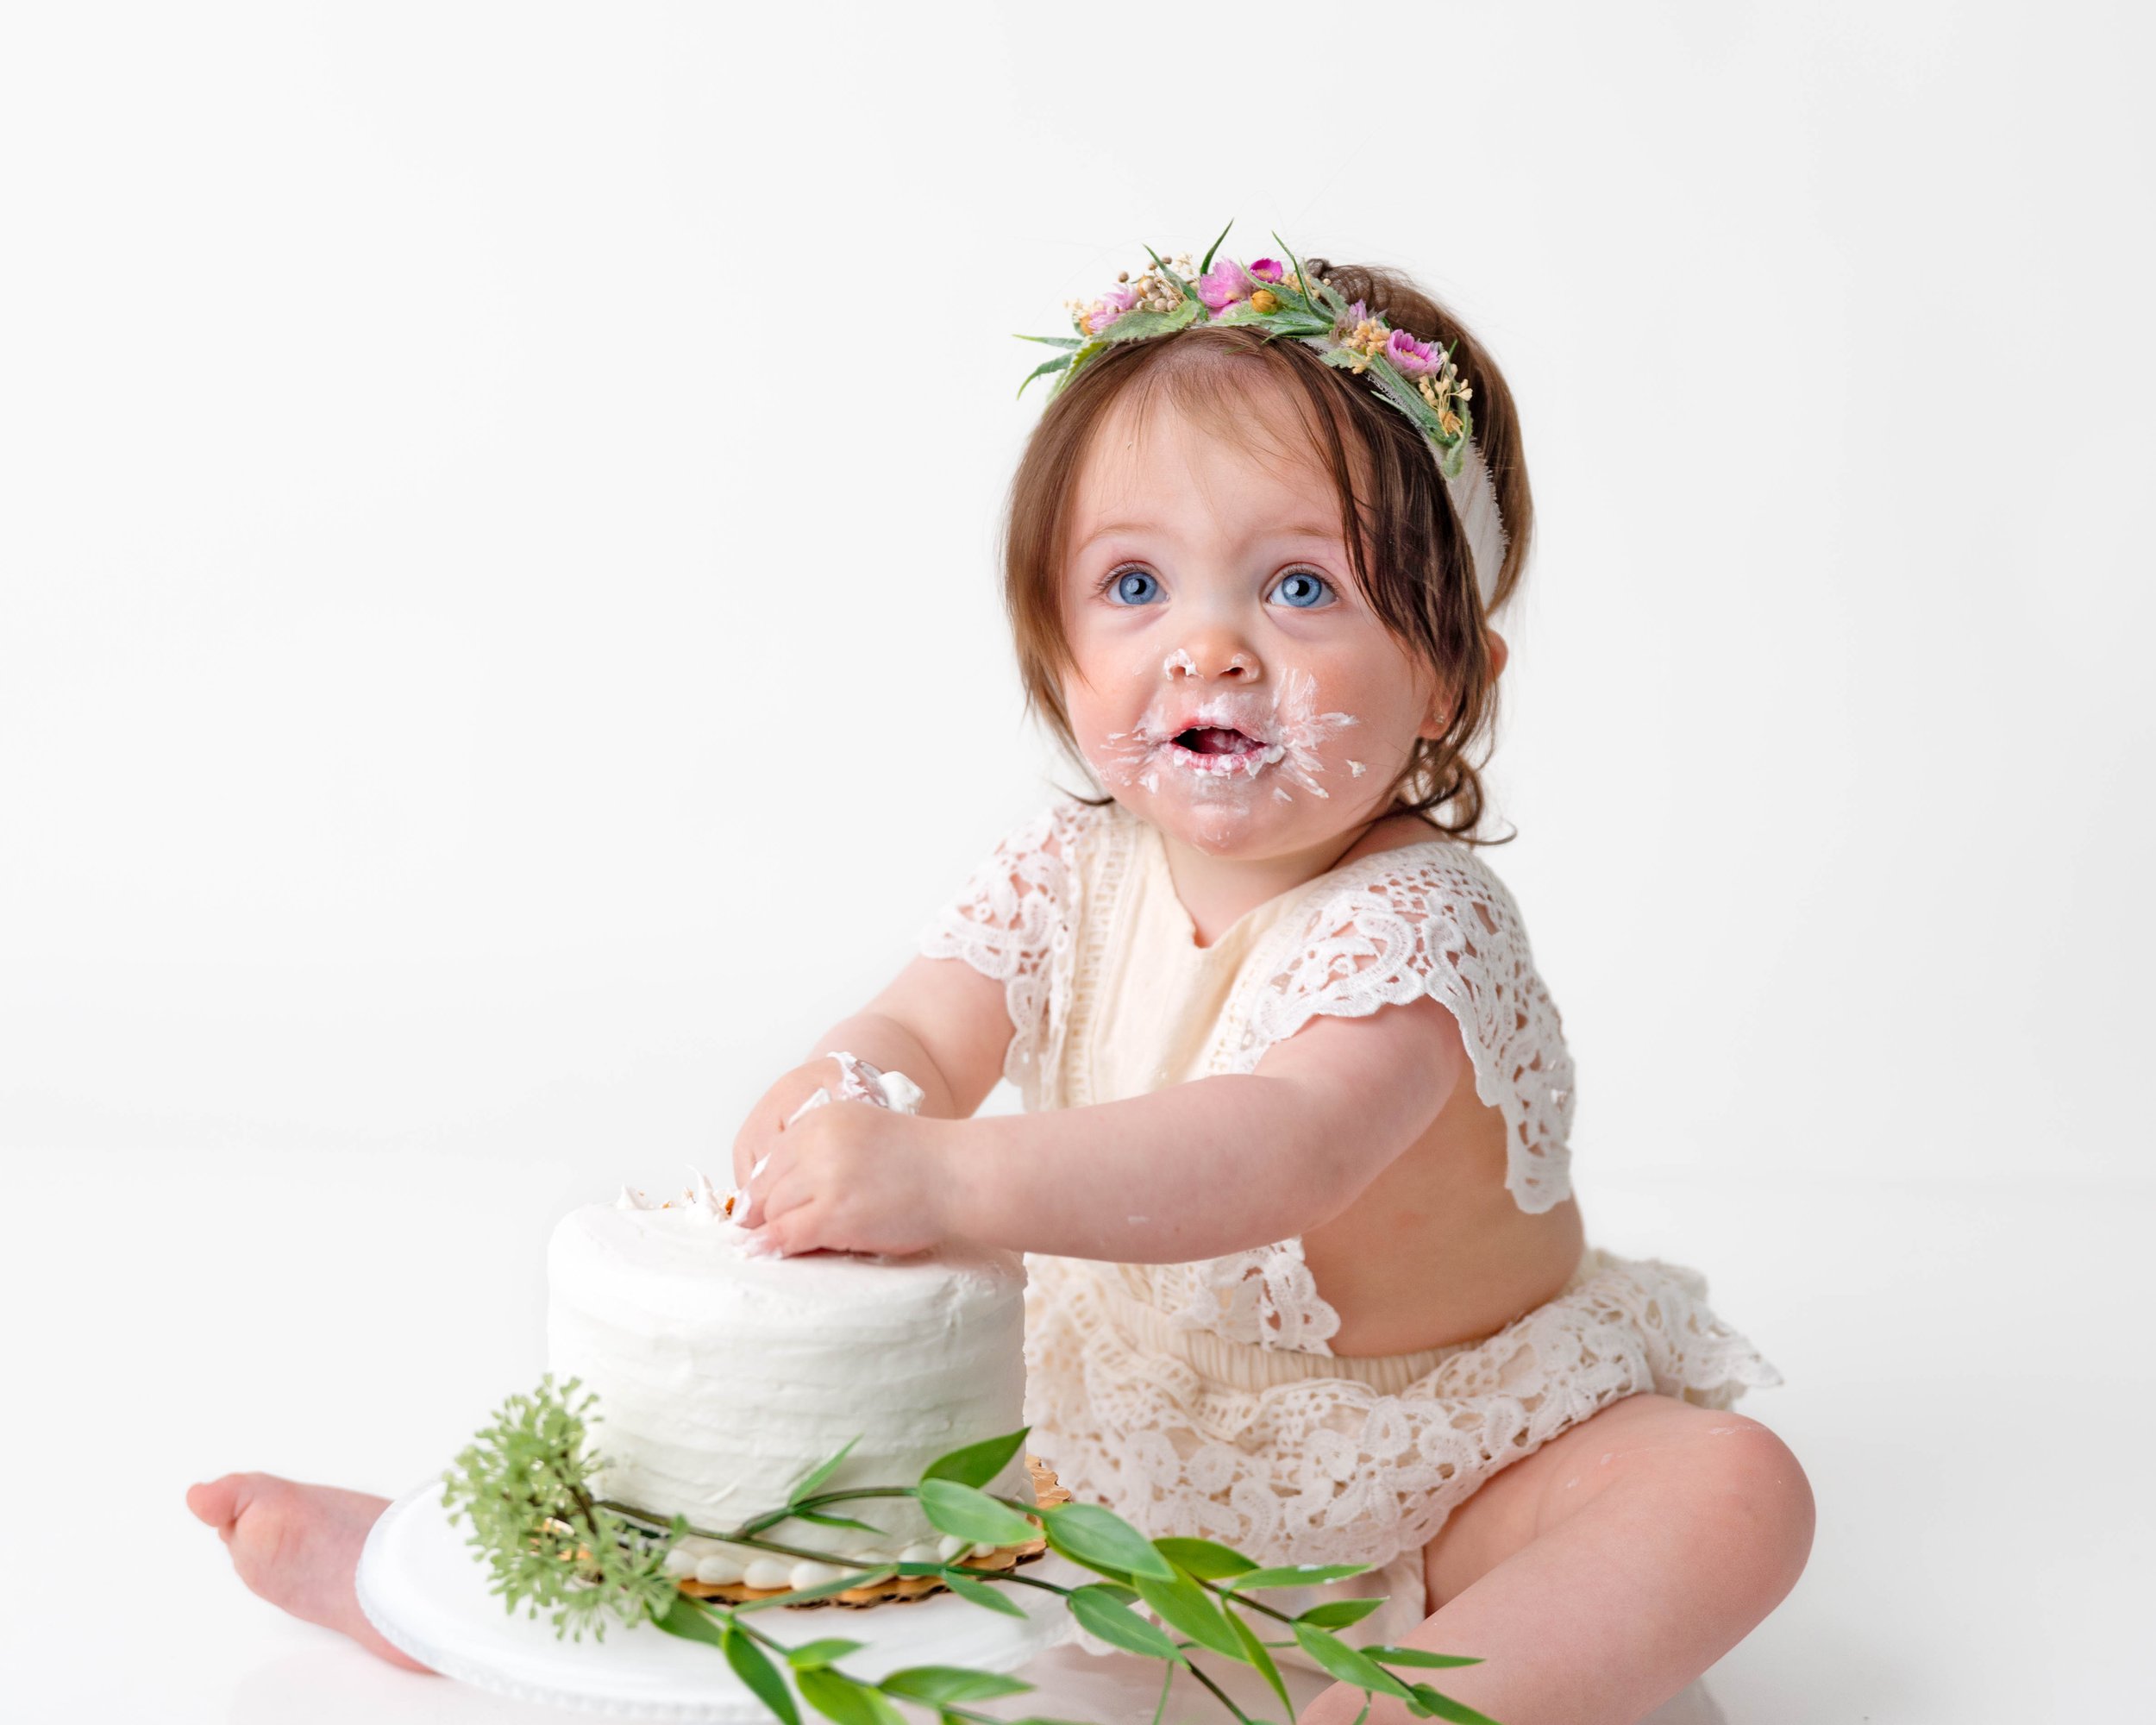 Cake-smash-one-year-old-photos-milestone-images-newborn-photography-baby-girl-spokane-washington-4.jpg